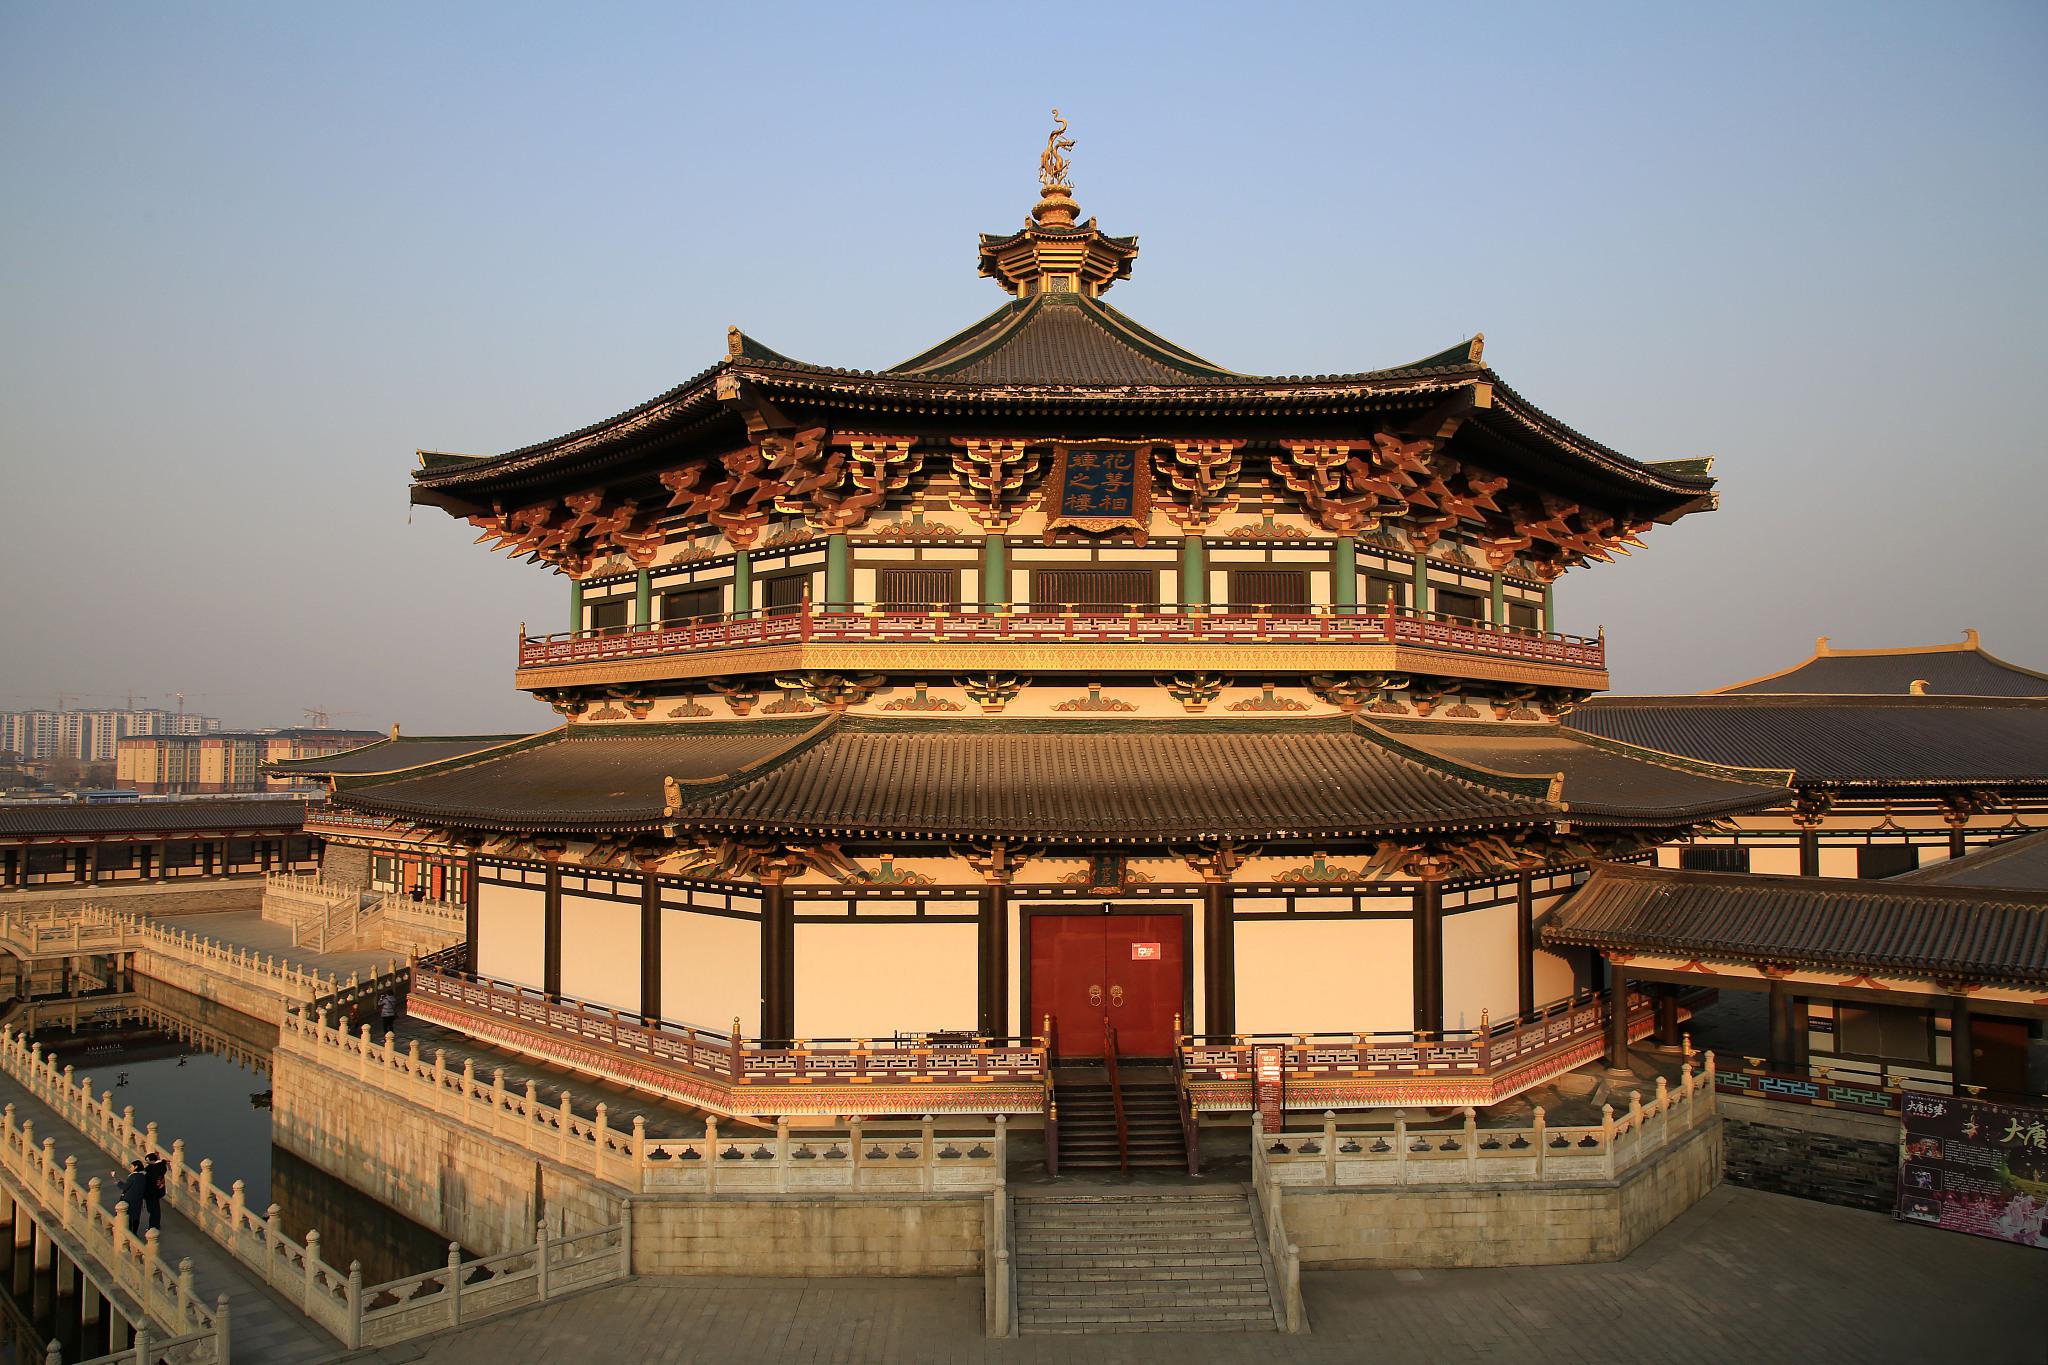 大明宫国家遗址公园位于陕西省西安市未央区,是唐朝时期的皇宫遗址